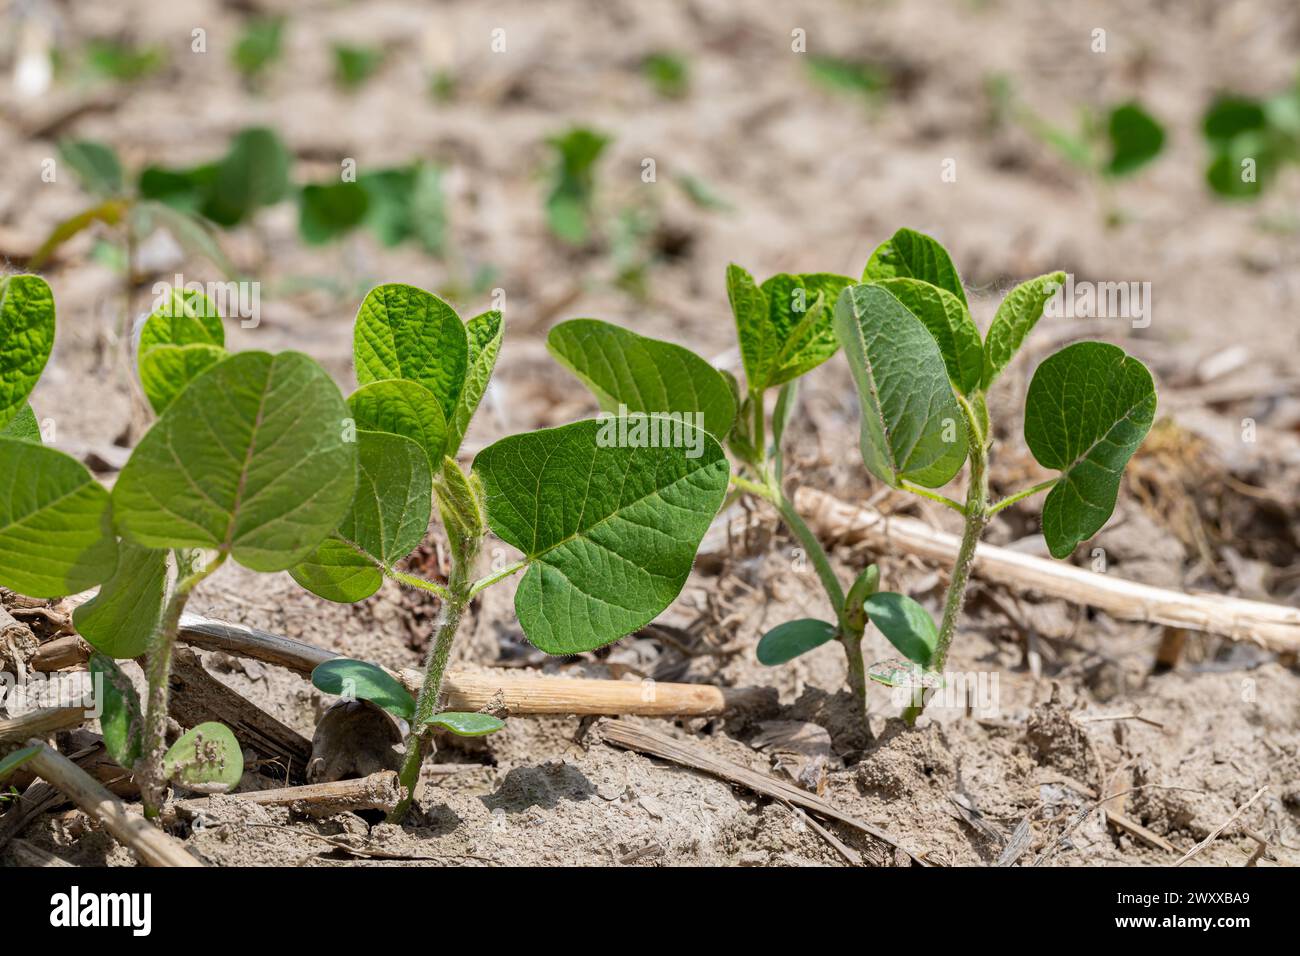 Sojabohnen, die nach dem Anpflanzen auf dem Feld wachsen. Landwirtschaft, Sojabohnenanbau und Wachstumsphasen Konzept. Stockfoto